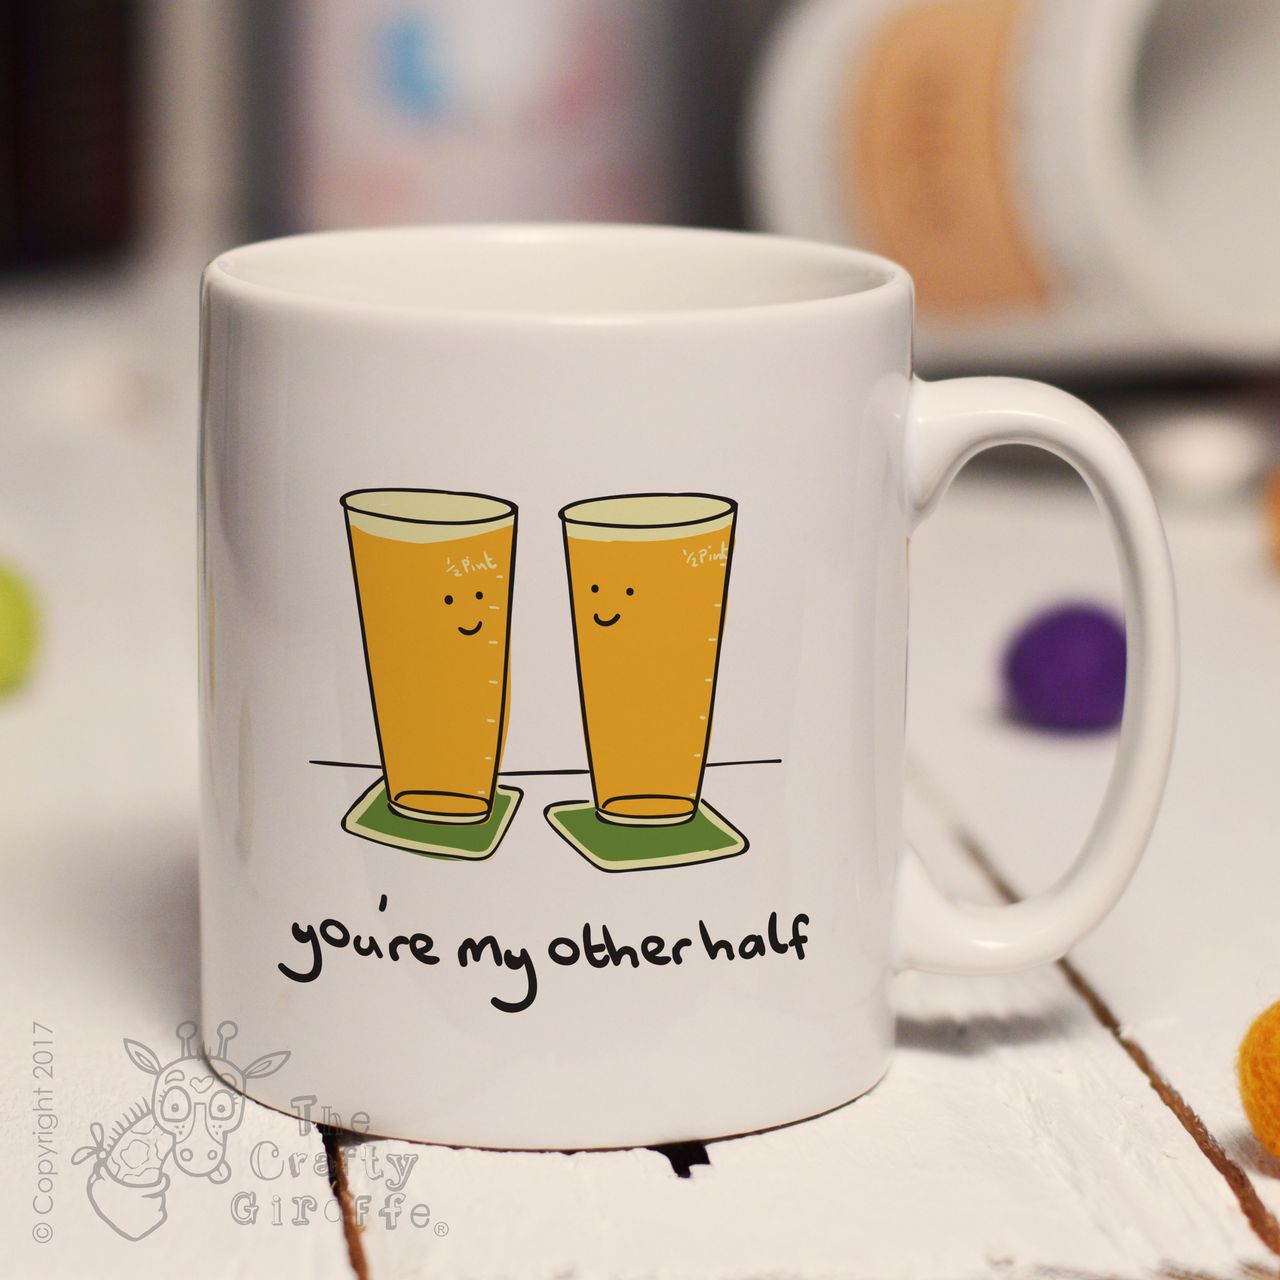 You’re my other half mug